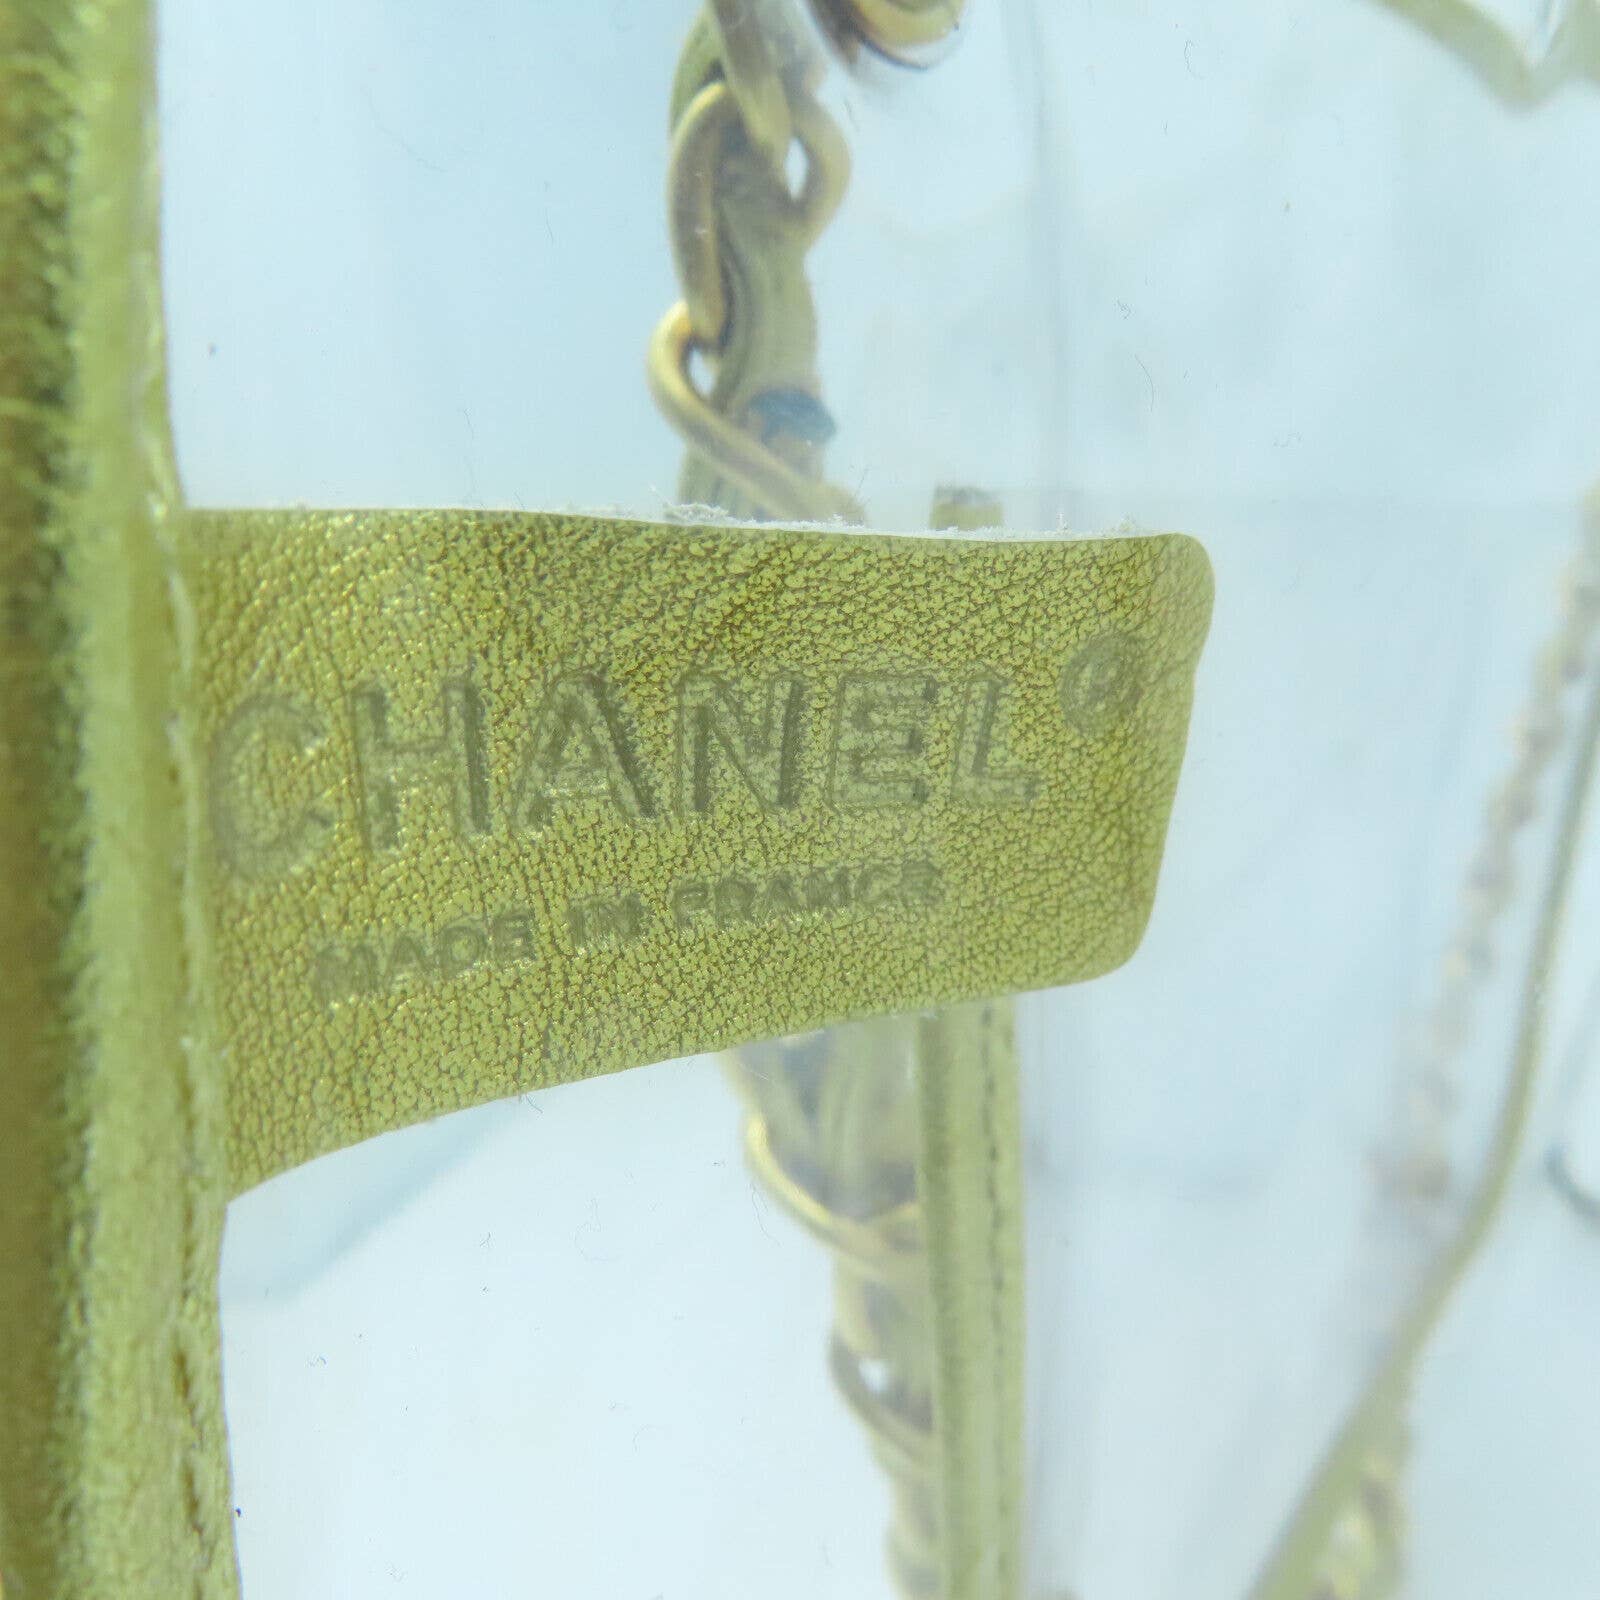 Authentic CHANEL CC Chain Shoulder Bag